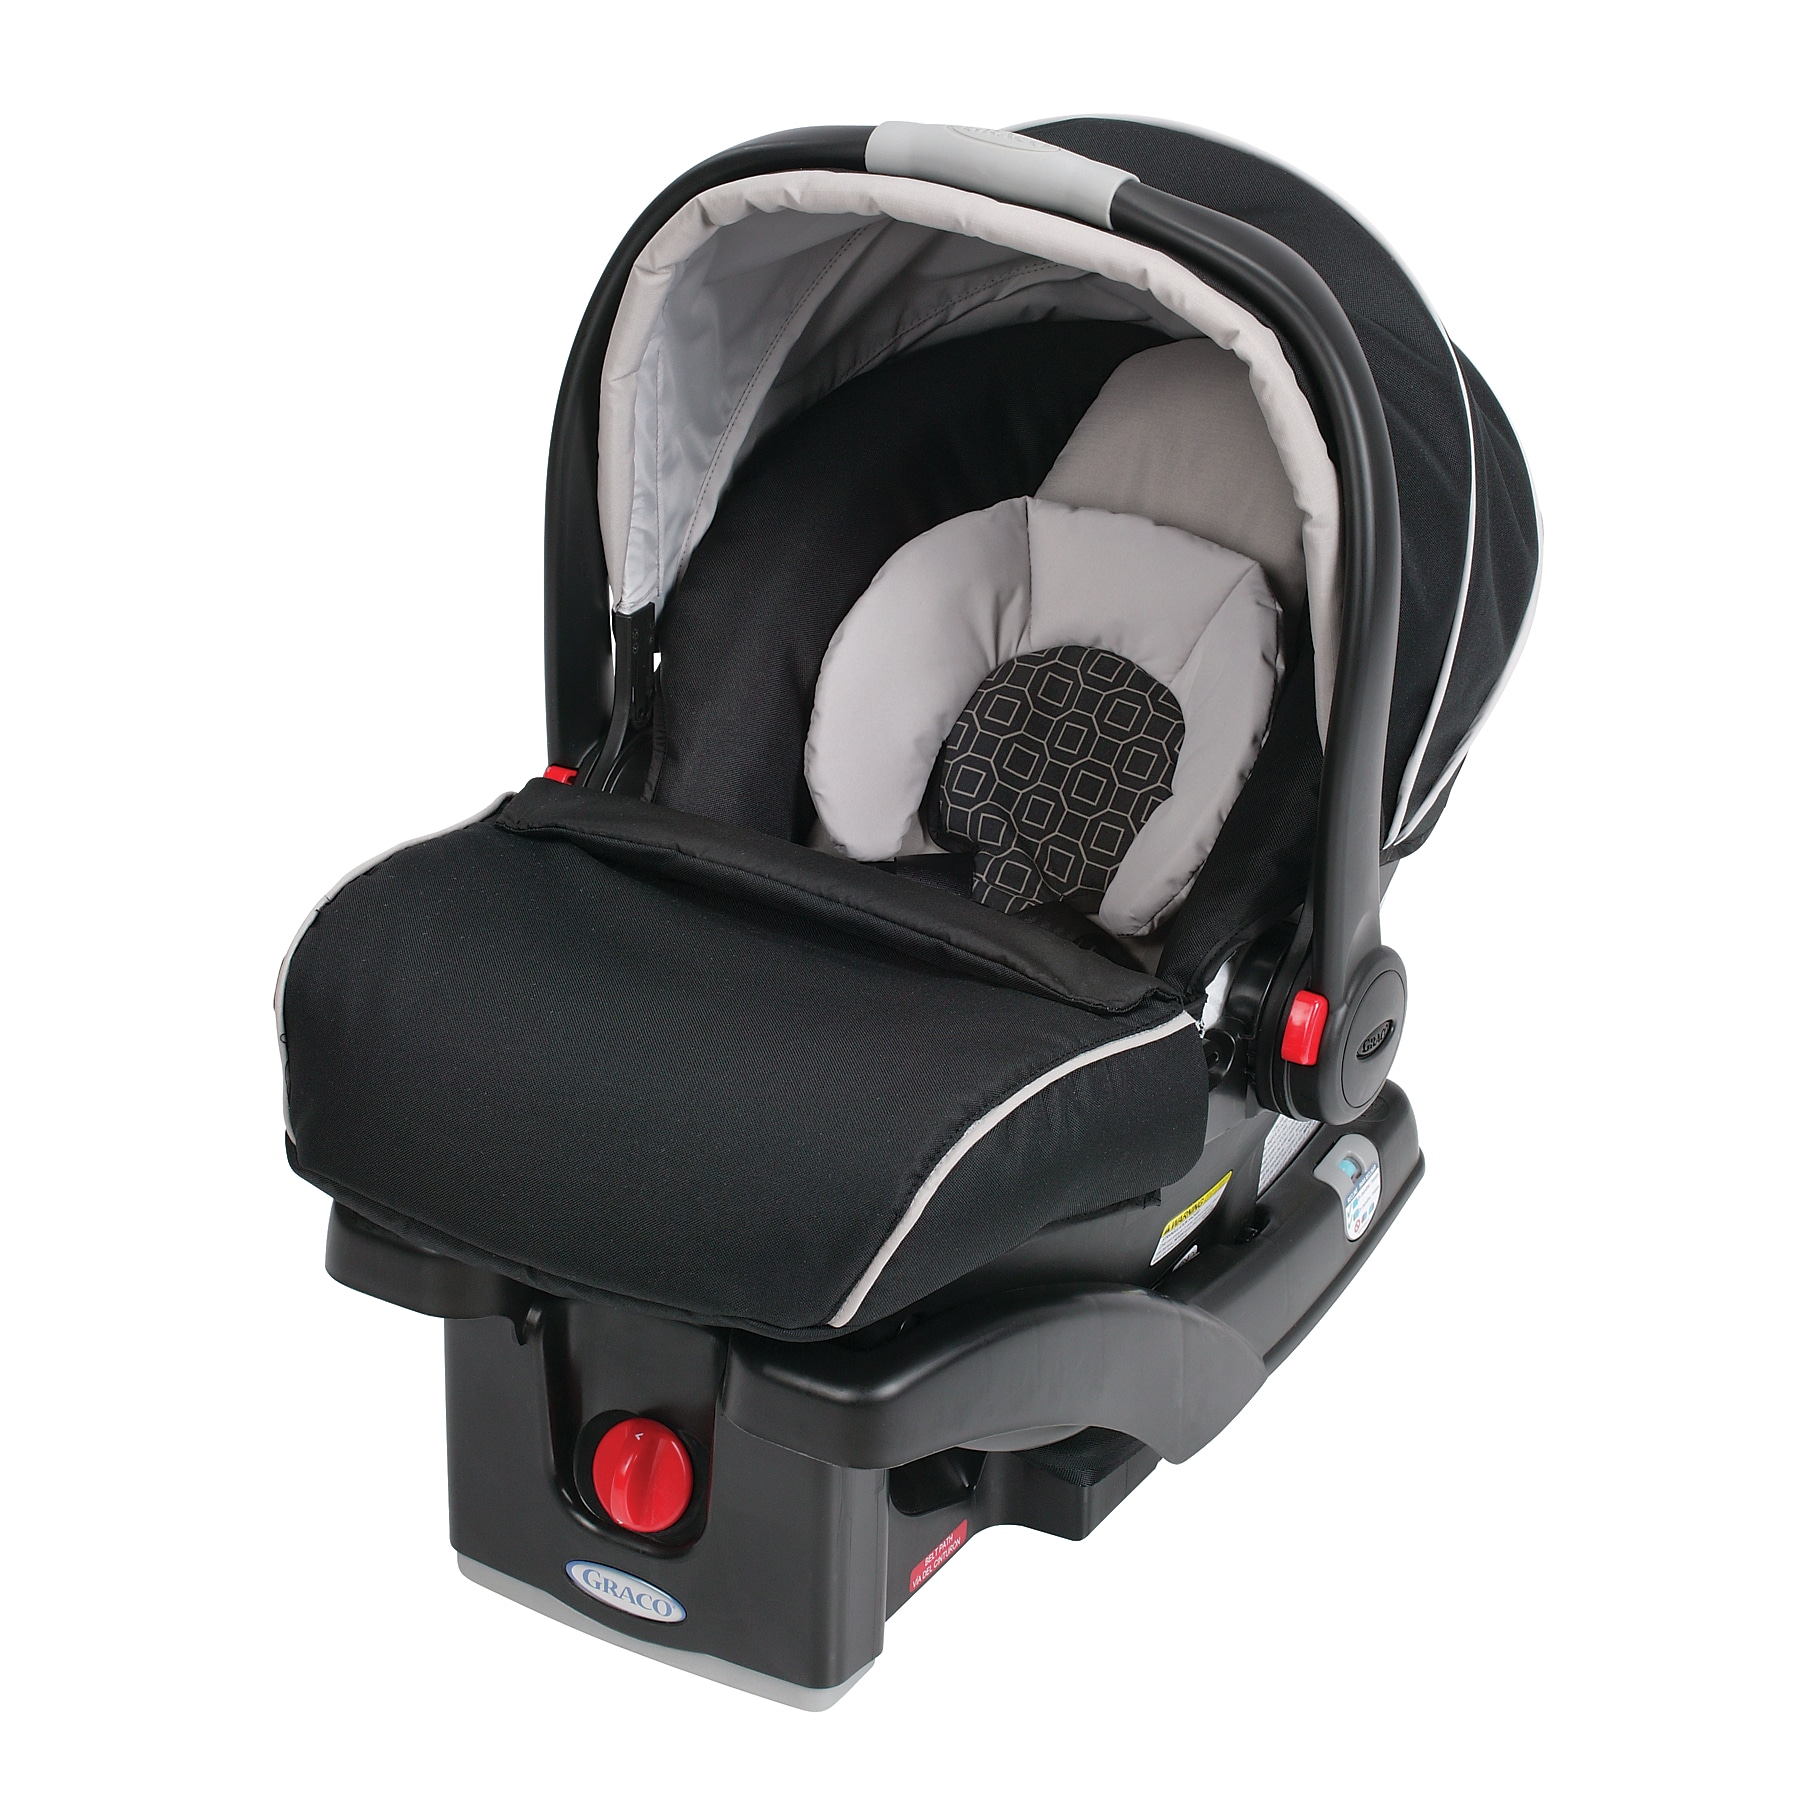 snugride click connect 35 infant car seat